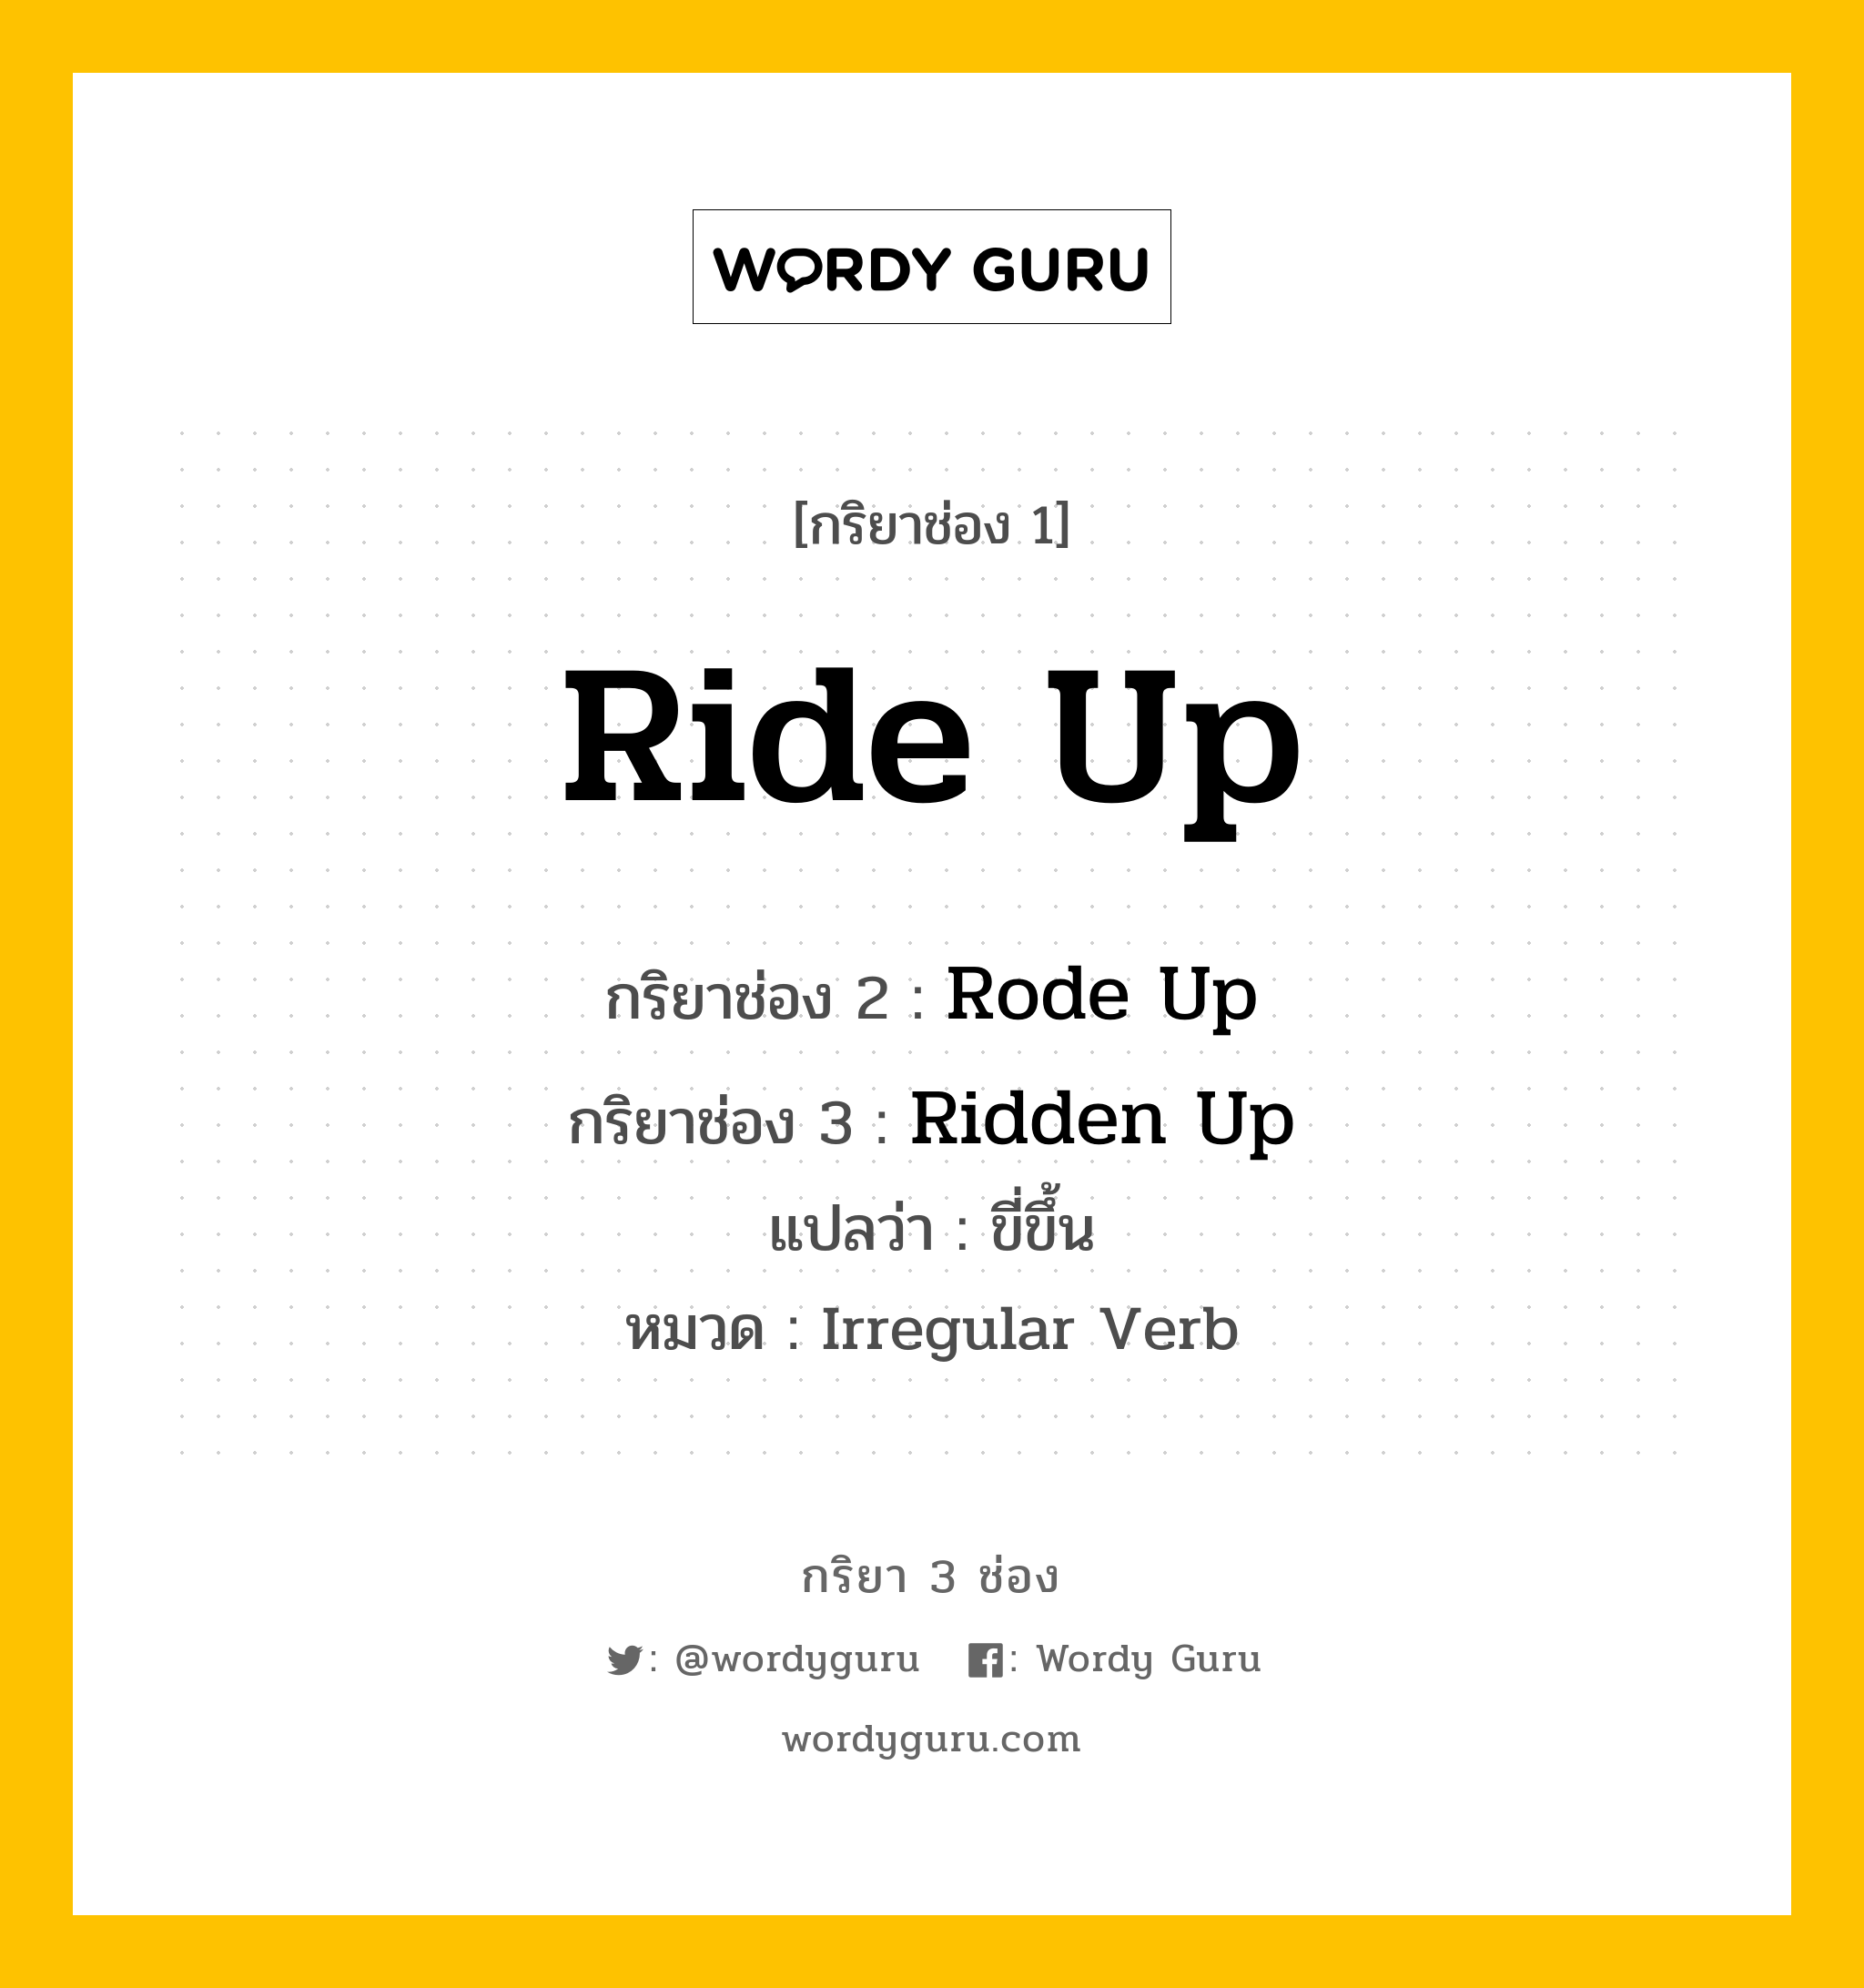 กริยา 3 ช่อง: Ride Up ช่อง 2 Ride Up ช่อง 3 คืออะไร, กริยาช่อง 1 Ride Up กริยาช่อง 2 Rode Up กริยาช่อง 3 Ridden Up แปลว่า ขี่ขึ้น หมวด Irregular Verb หมวด Irregular Verb